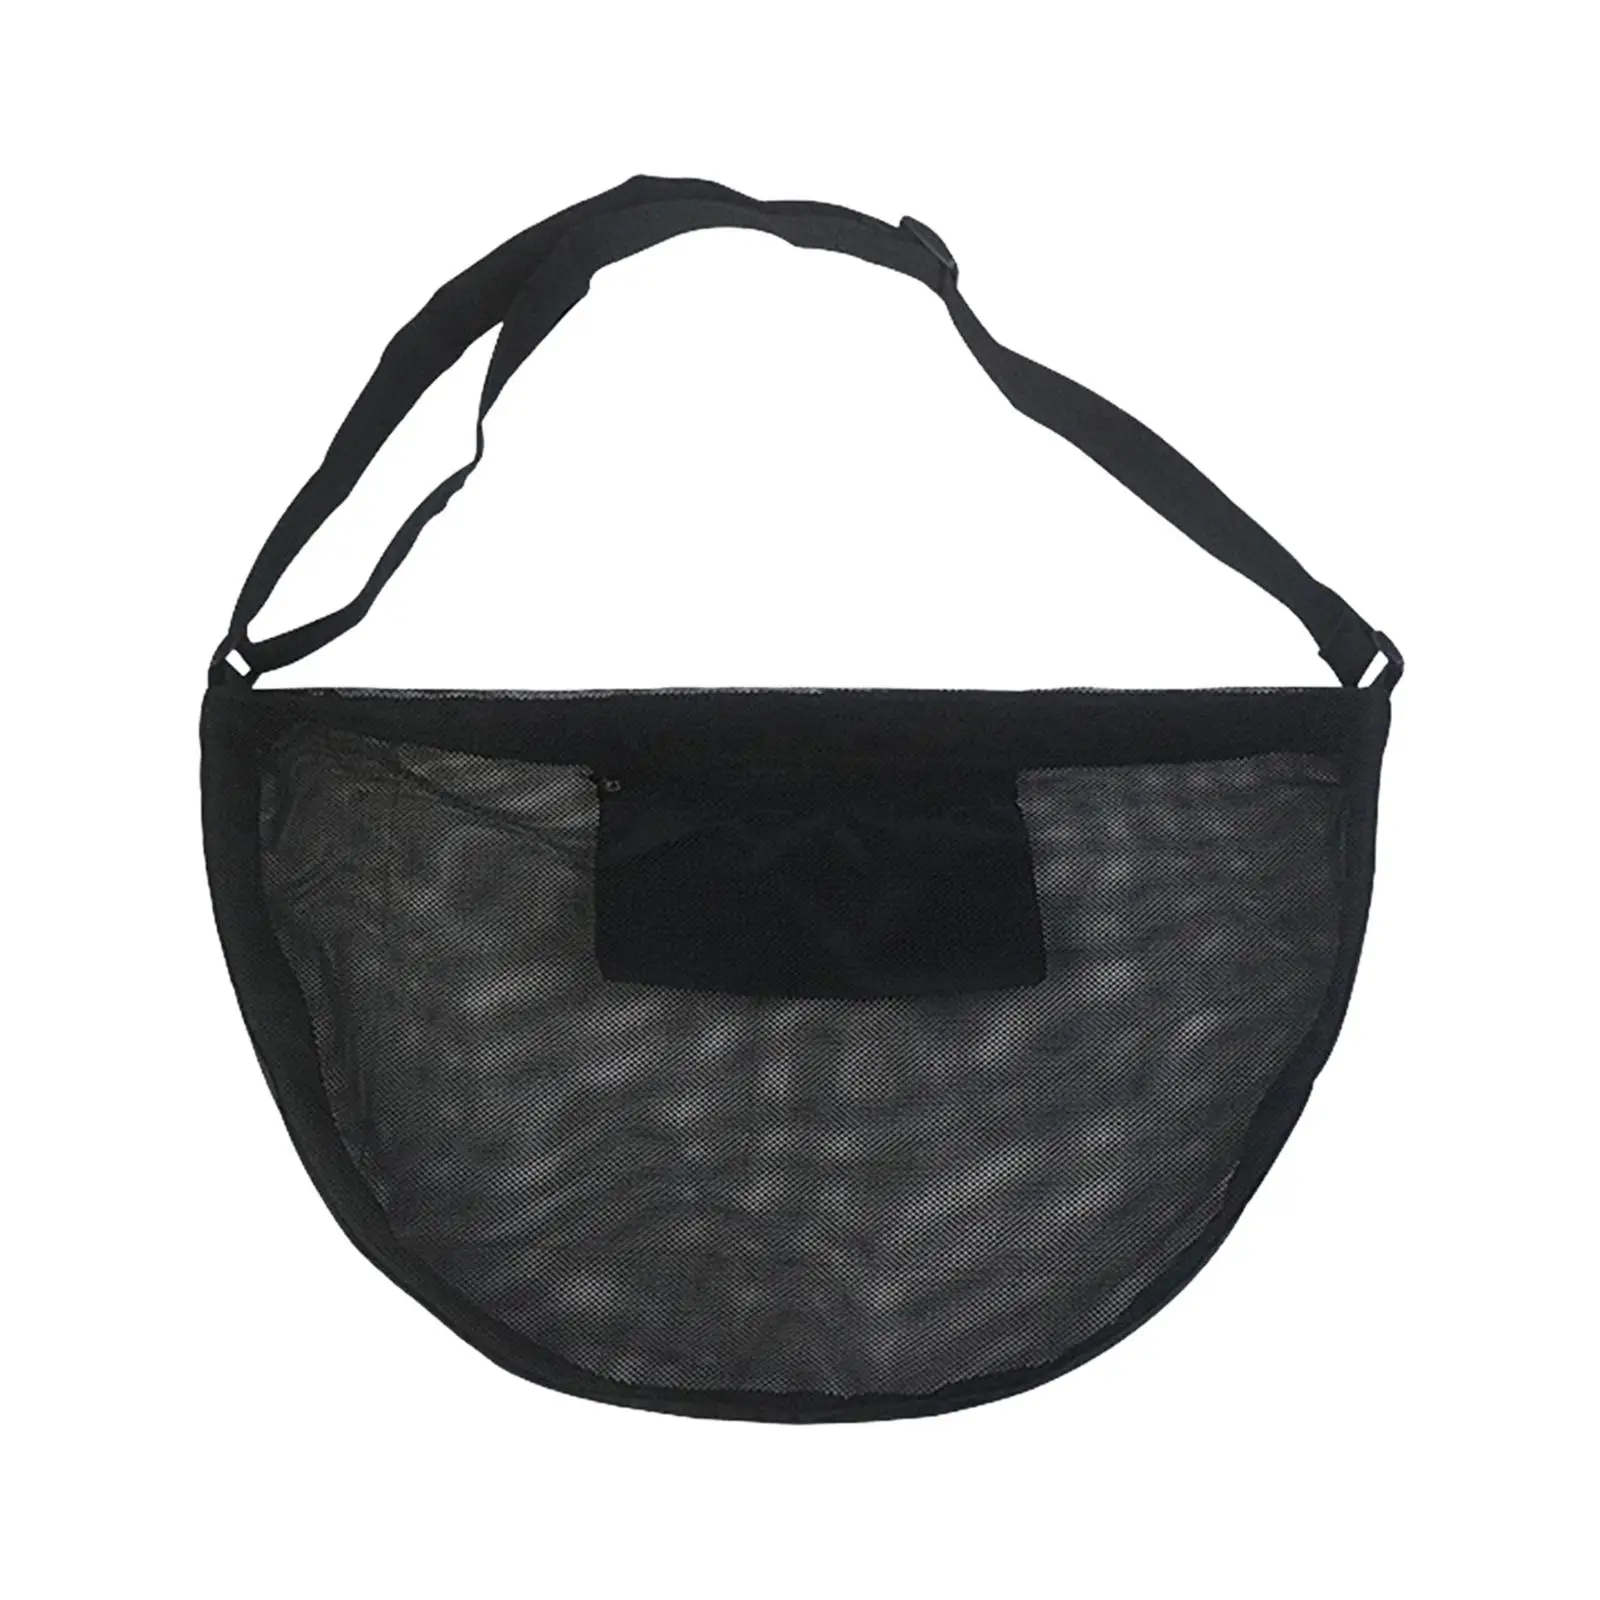 Basketball Shoulder Bag Tear Resistant Outdoor Professional Adjustable Shoulder Straps Sports Ball Bag for Football Volleyball